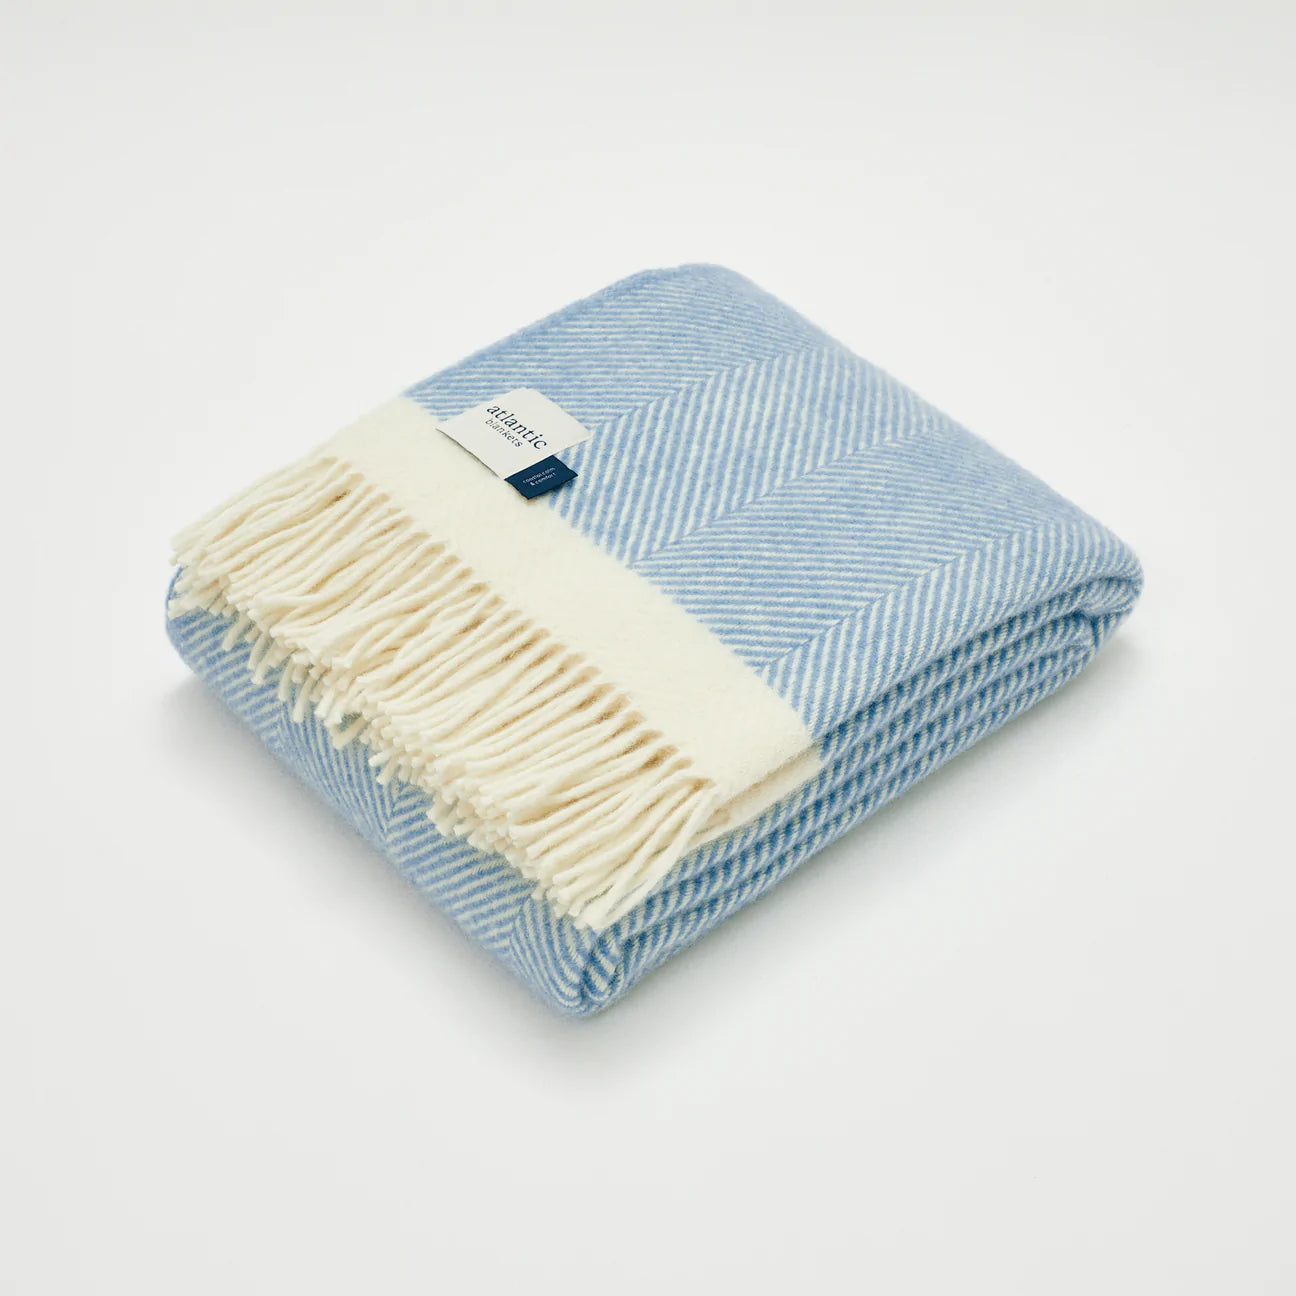 Dusk blue Herringbone Wool Throw Blanket - THE BRISTOL ARTISAN